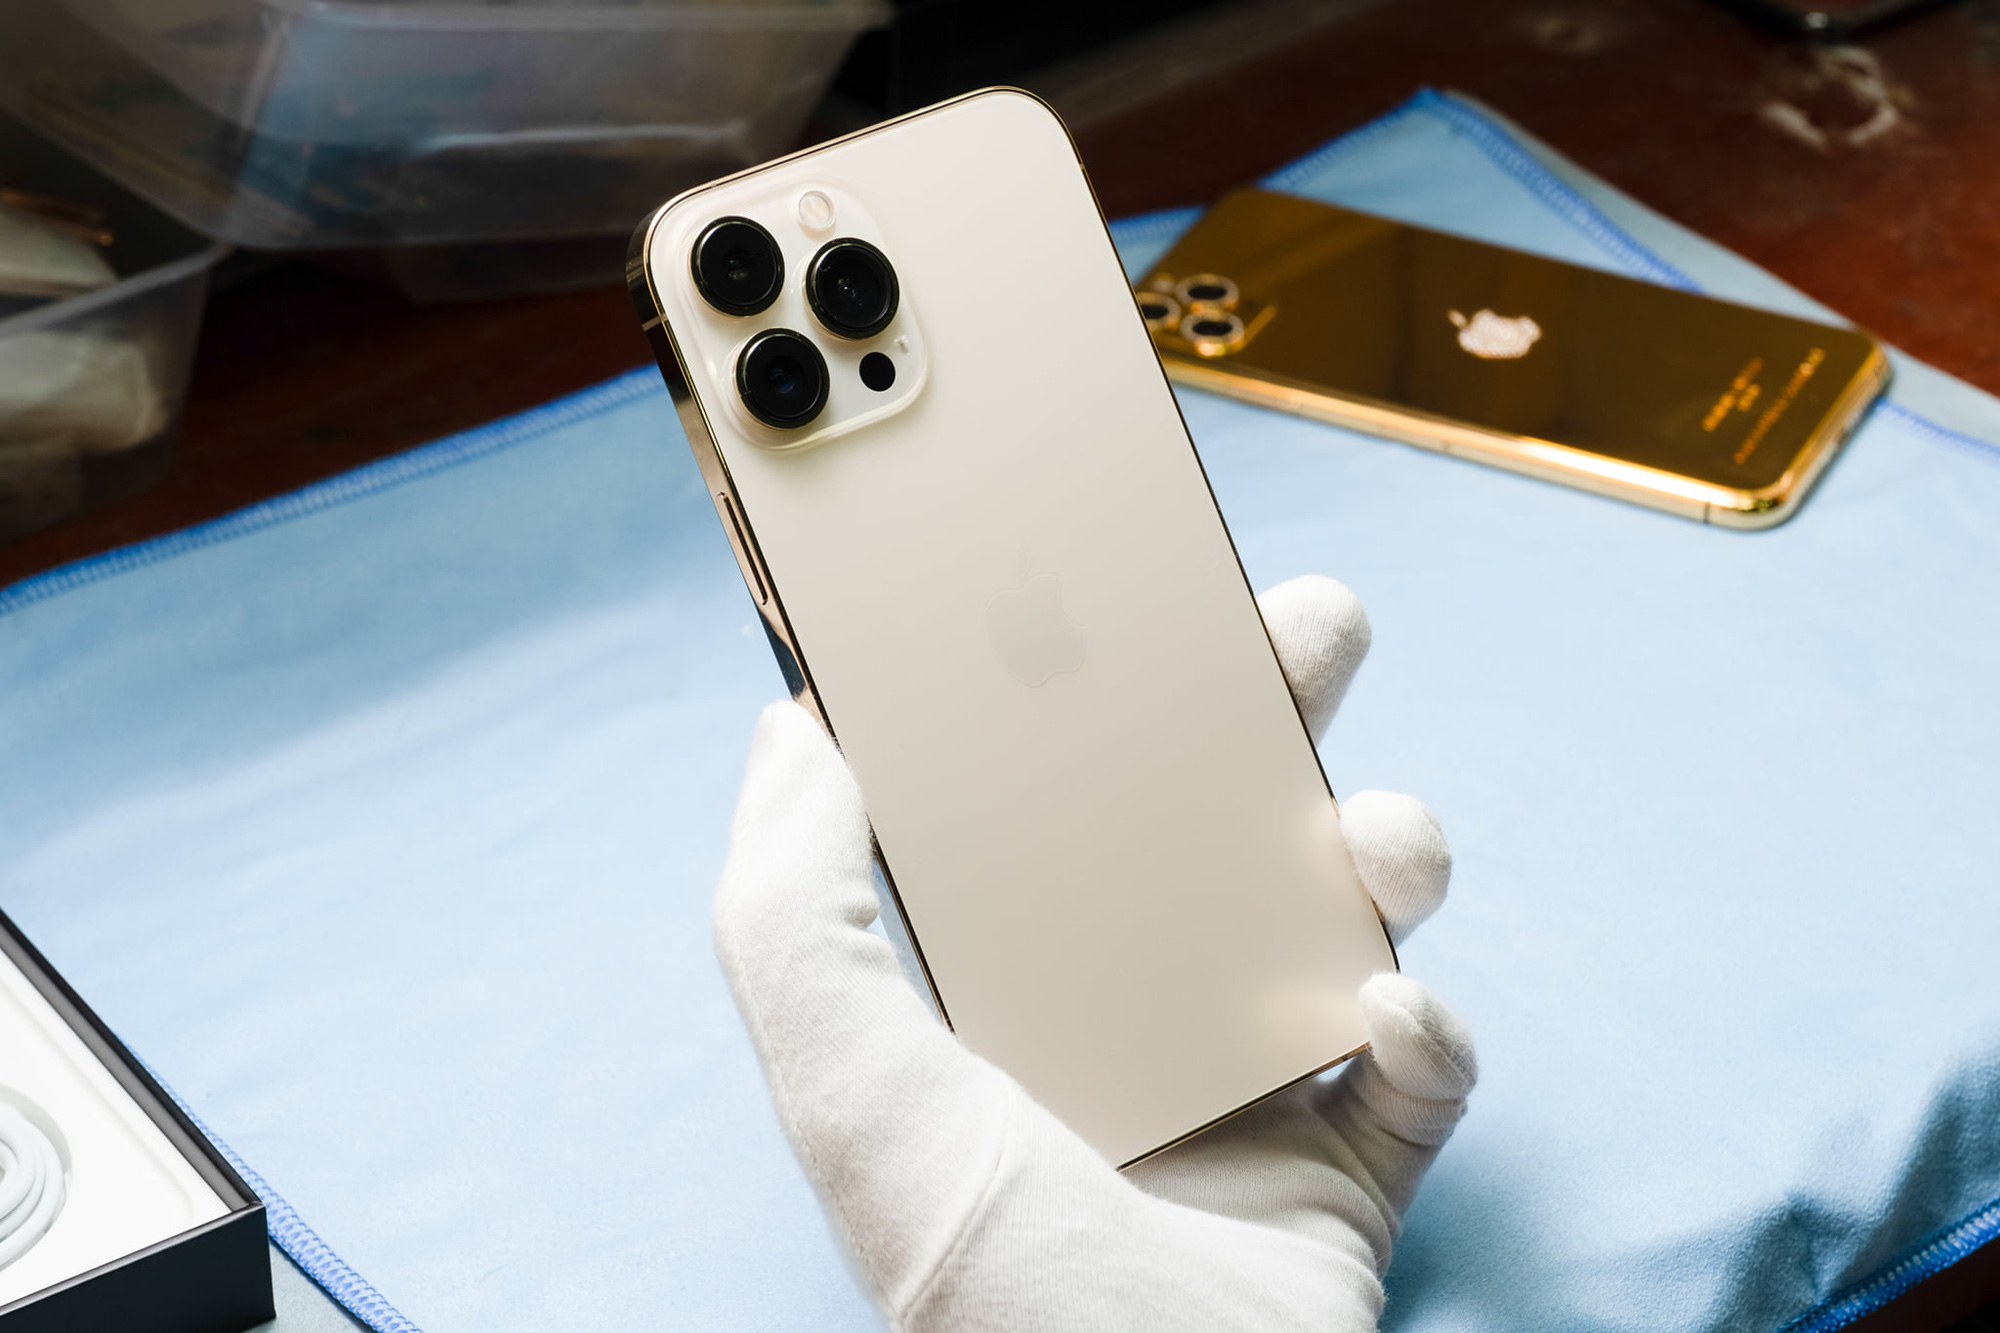 Việc tháo rời iPhone 13 Pro Max có thể làm bạn sợ hãi, nhưng không cần lo lắng. Hình ảnh liên quan sẽ hướng dẫn bạn từng bước càng tháo rời chiếc điện thoại đắt tiền này. Bây giờ bạn có thể tự tin tháo rời để sửa chữa hoặc nâng cấp thiết bị của mình.